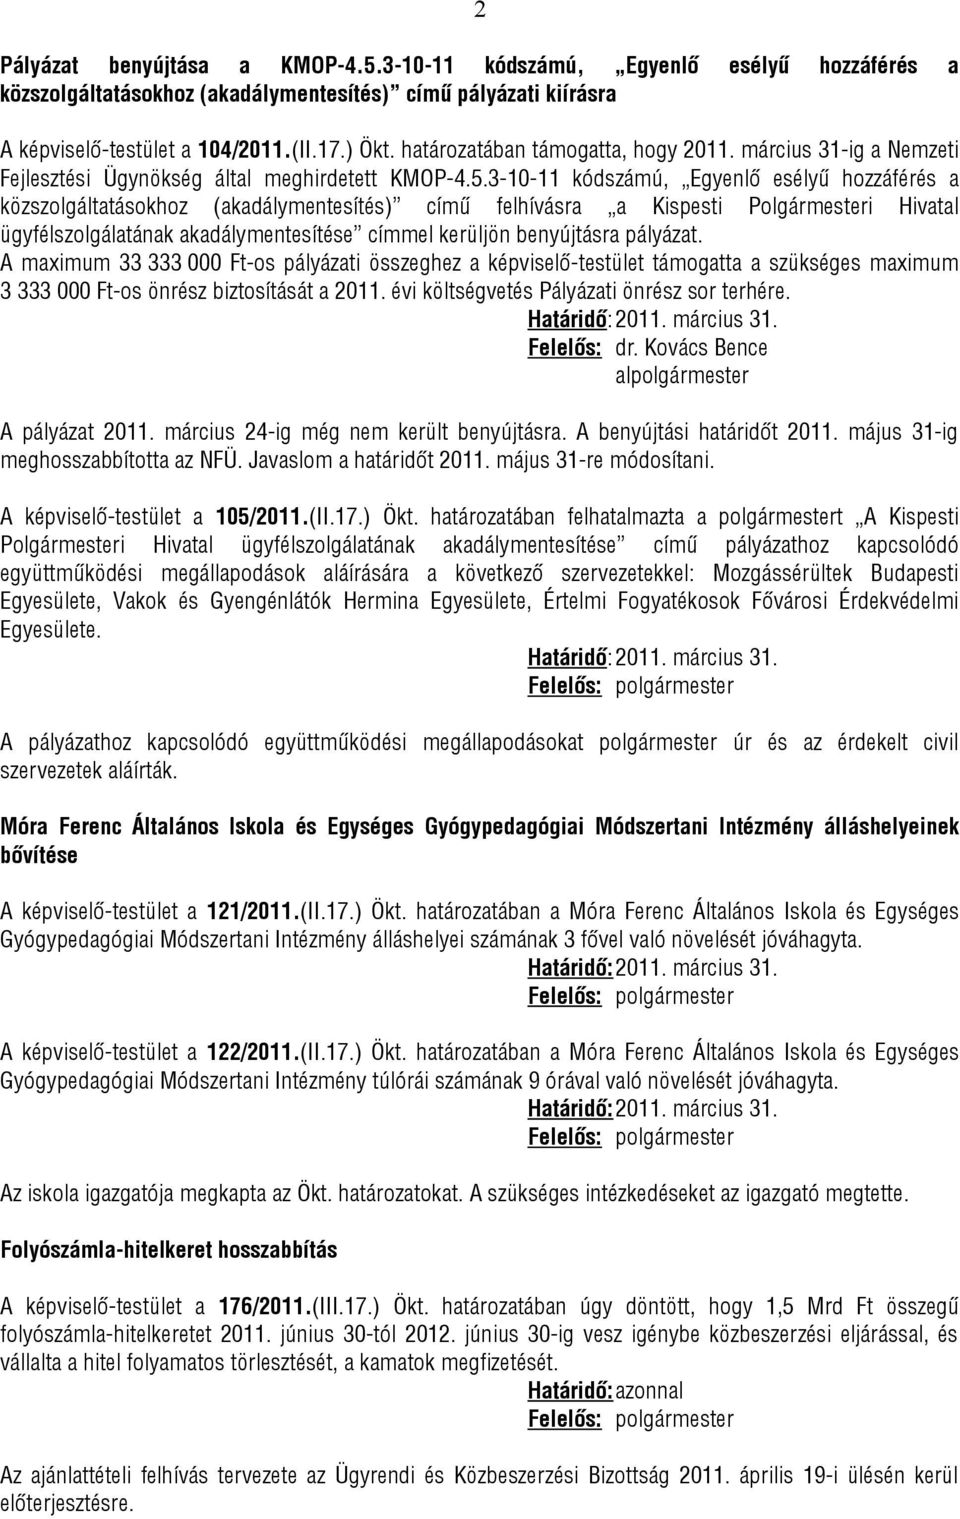 3-10-11 kódszámú, Egyenlő esélyű hozzáférés a közszolgáltatásokhoz (akadálymentesítés) című felhívásra a Kispesti Polgármesteri Hivatal ügyfélszolgálatának akadálymentesítése címmel kerüljön